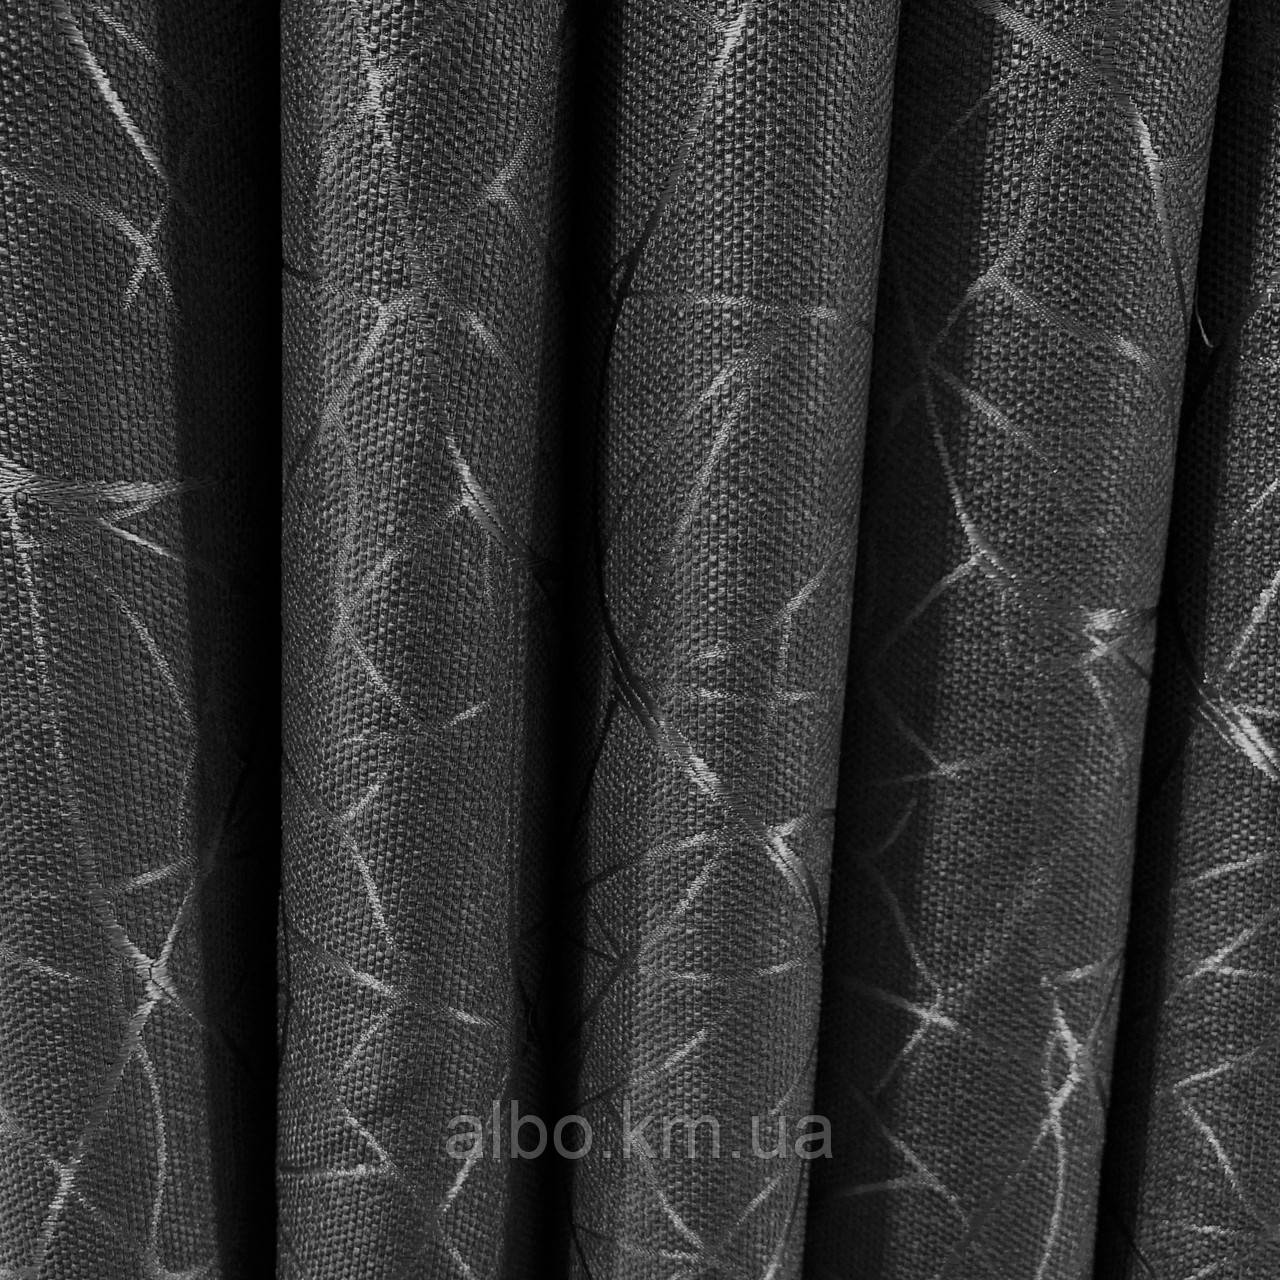 Щільна тканина для штор на метраж, льон з візерунком, темно-сірого кольору блекаут, висота 2.8 м. (M17-12)